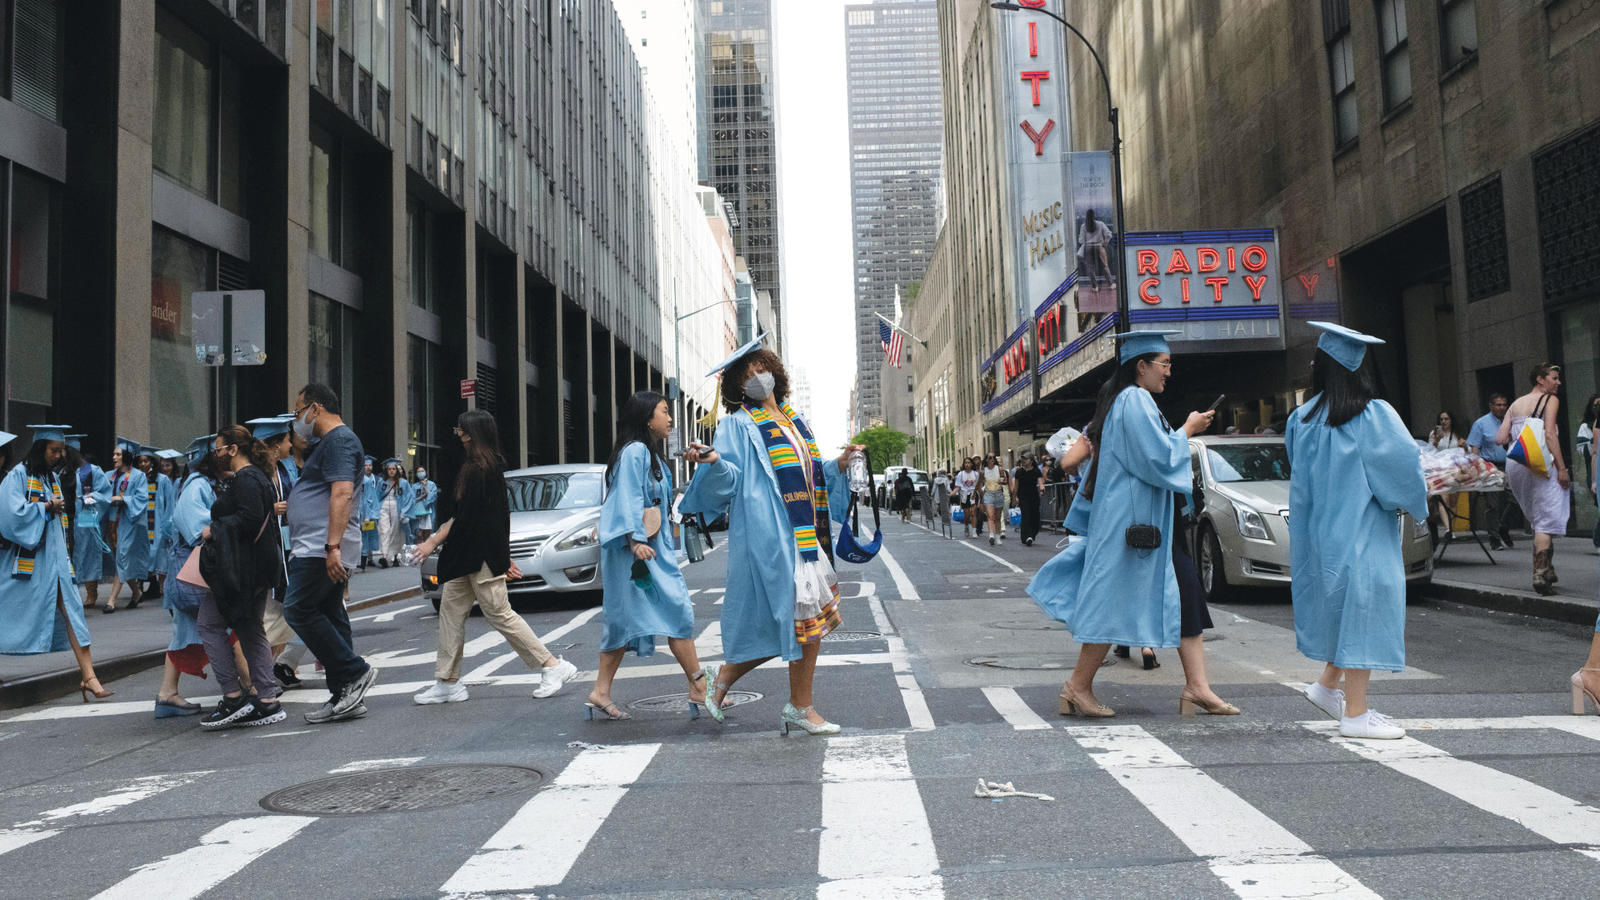 Barnard women in graduation gowns stride across a city crosswalk